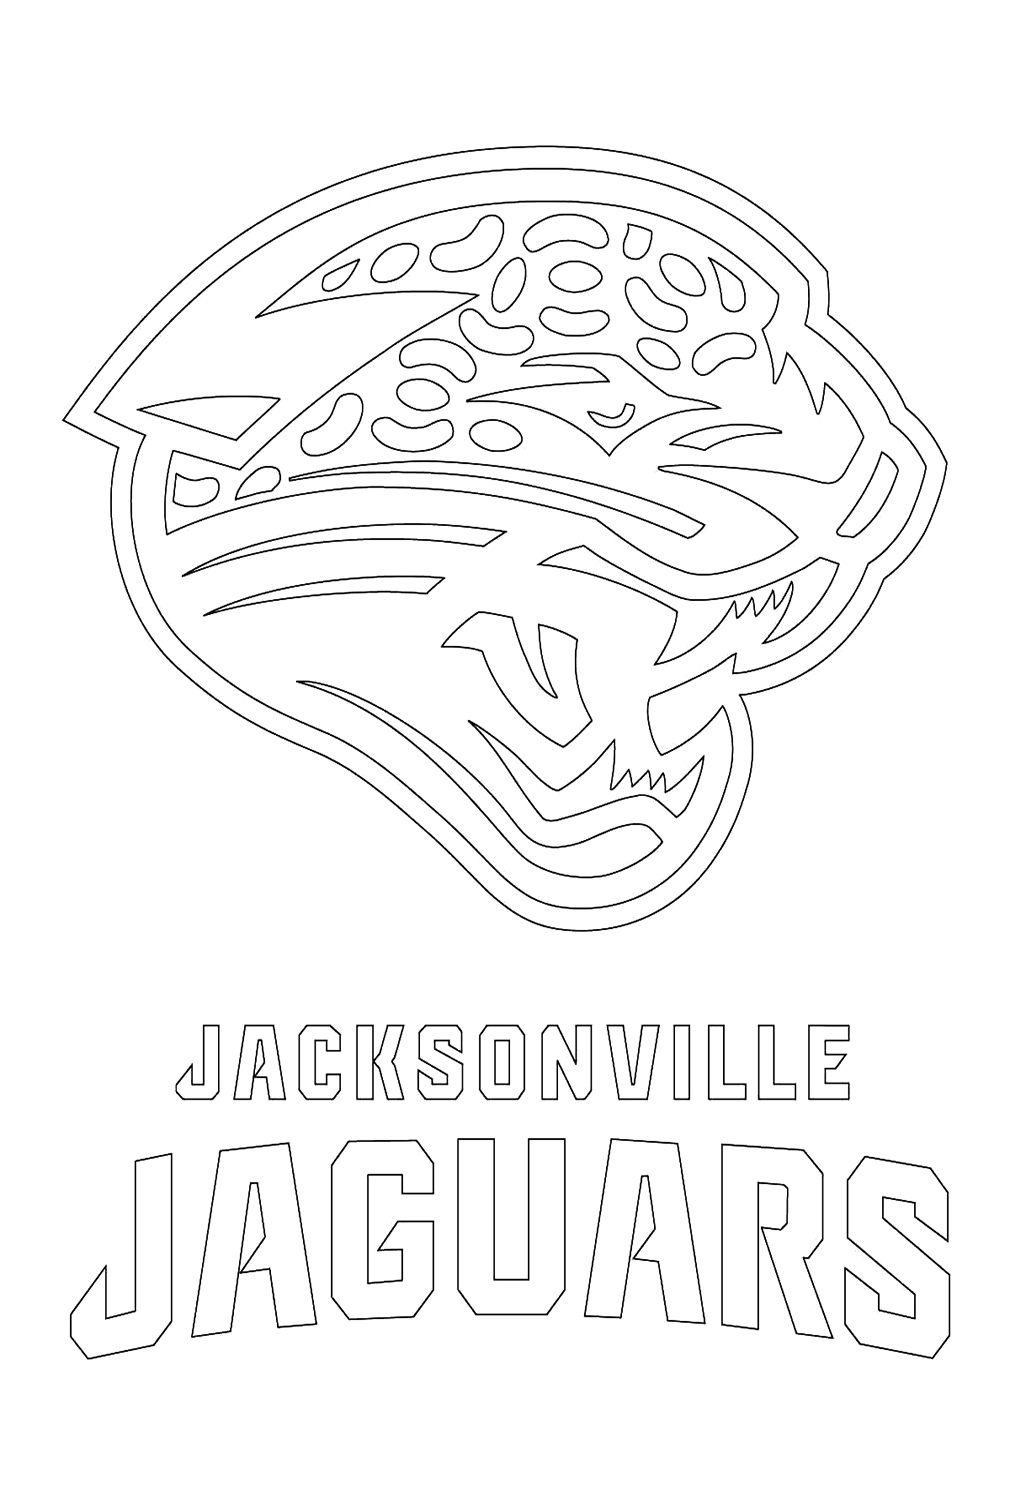 شعار جاكسونفيل جاغوارز من اتحاد كرة القدم الأميركي